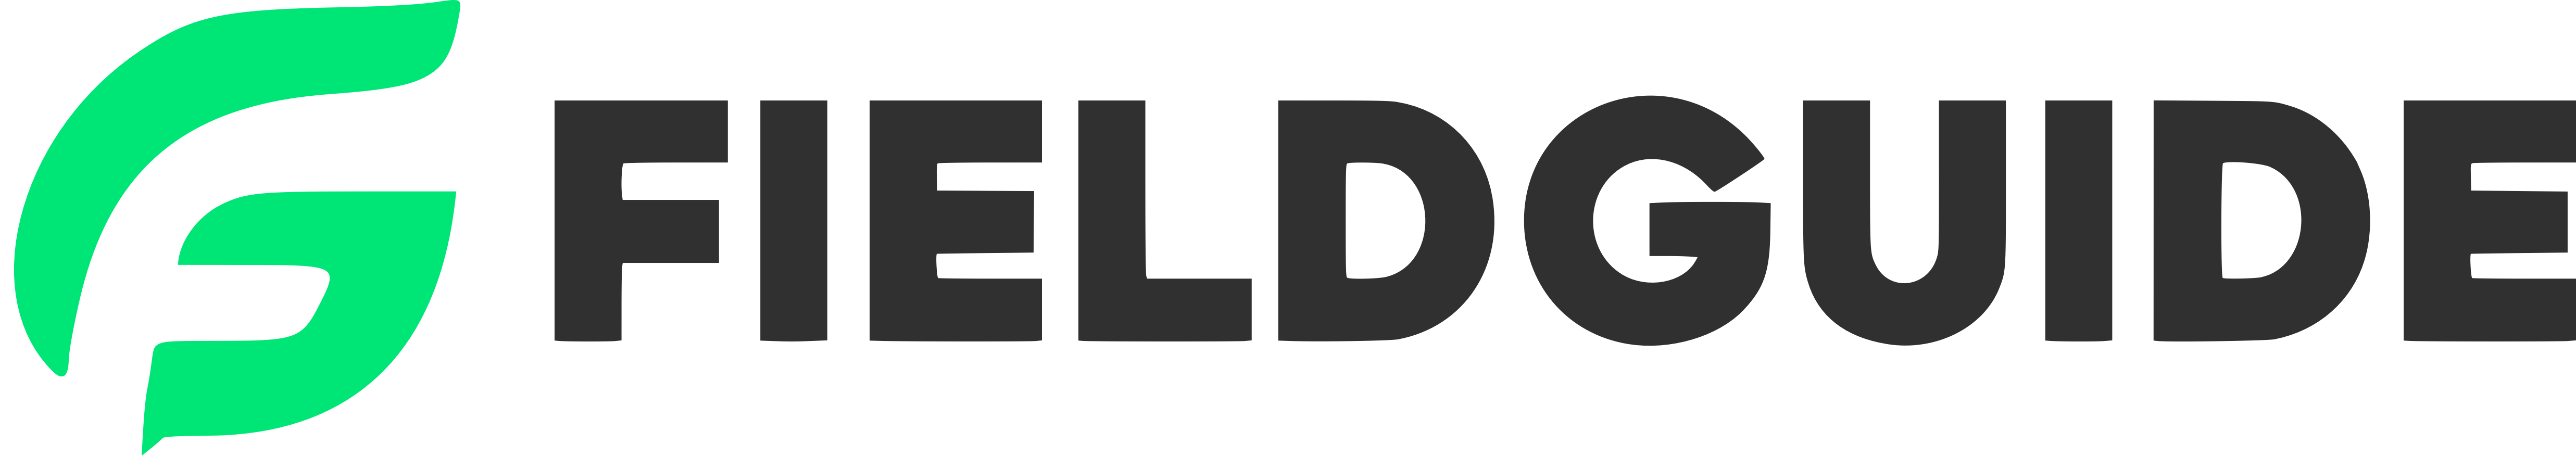 Fieldguide Logo